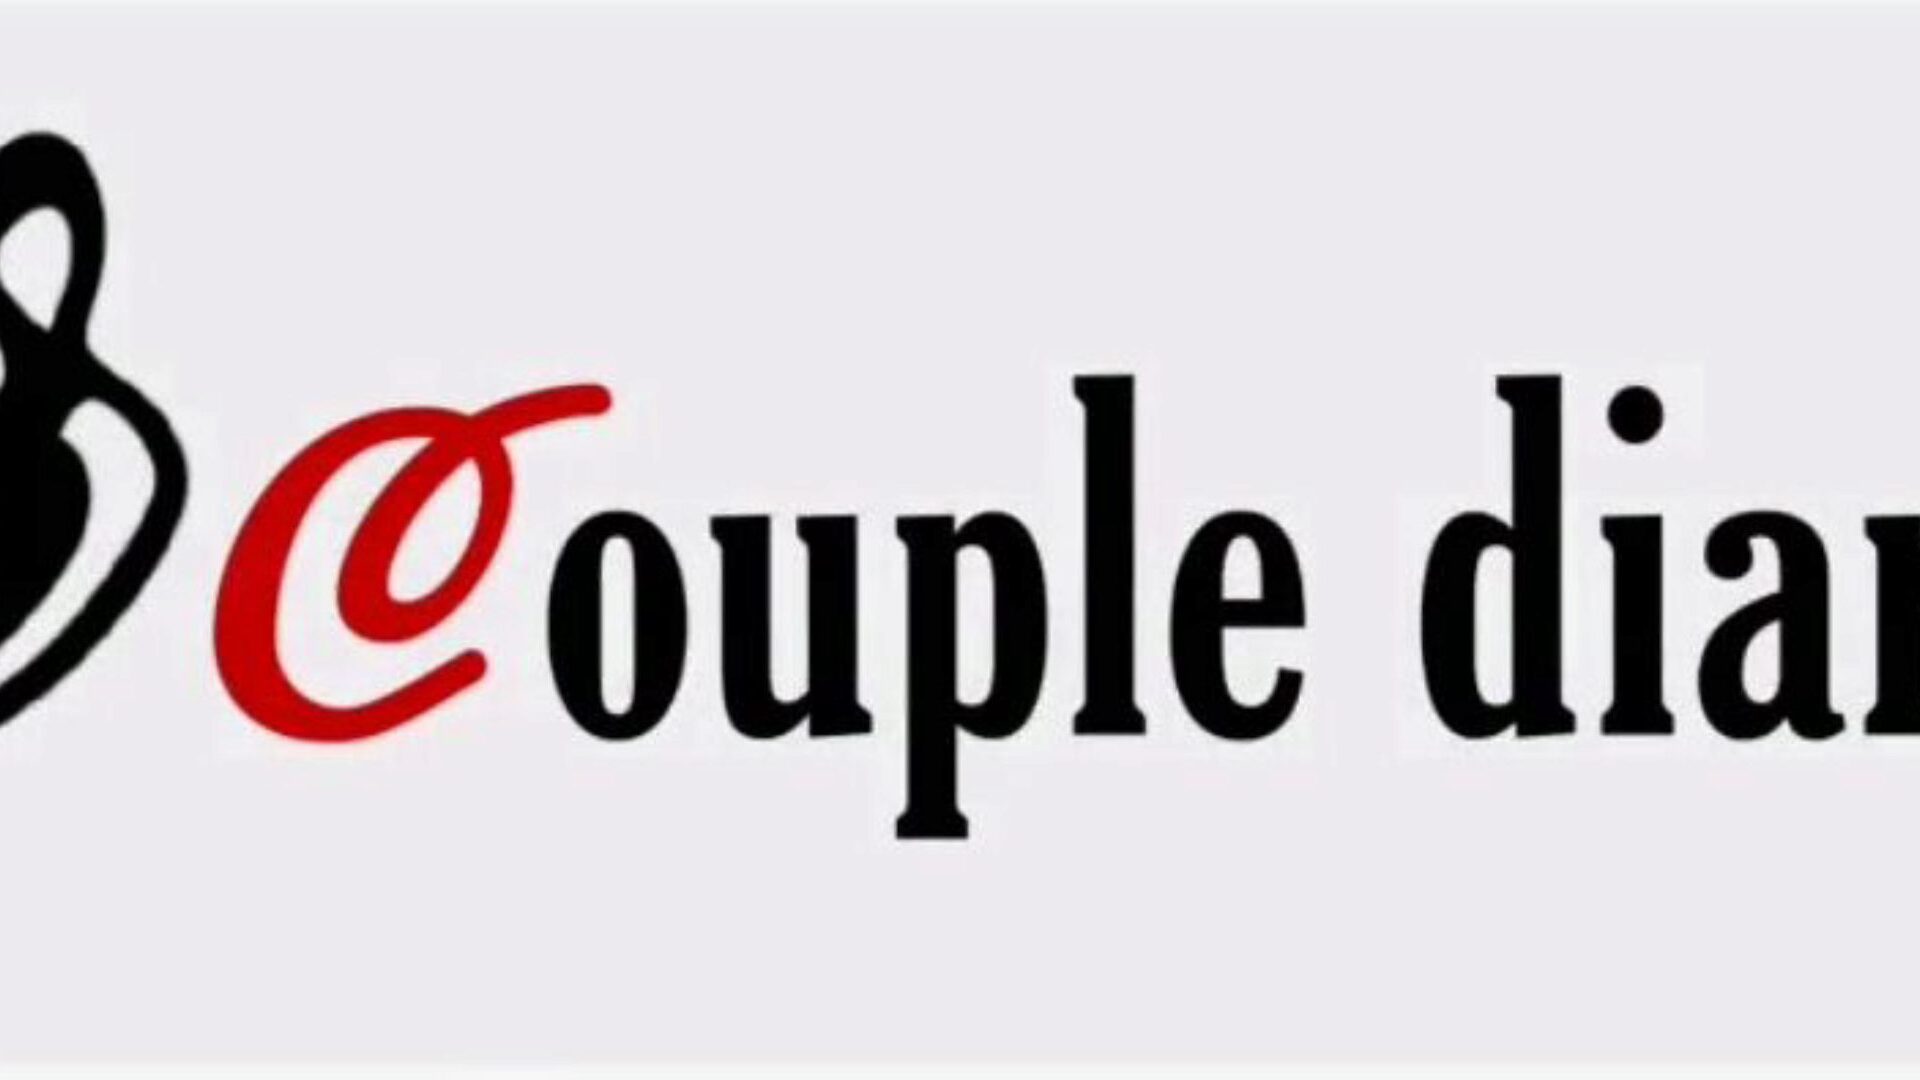 يوميات زوجين مغربيين للزوجين المتزوجين حديثًا فيديو كامل شاهد يوميات زوجين مغربيين للزوجين المتزوجين حديثًا حلقة فيديو كاملة على xhamster - الأرشيف النهائي لمقاطع أنبوب xxnx العربية المجانية عالية الدقة